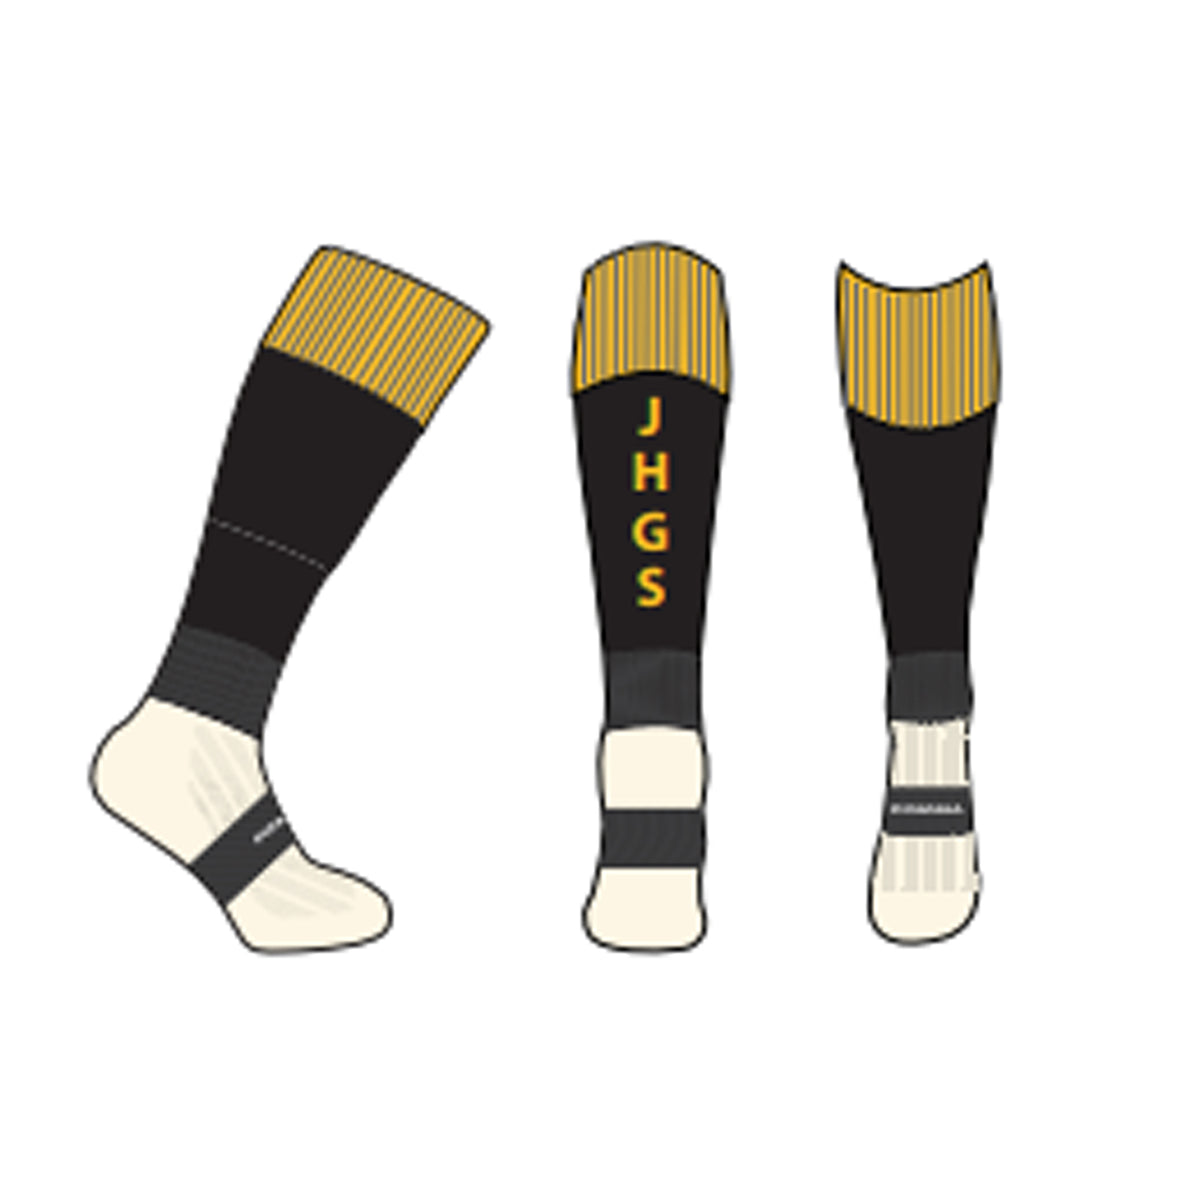 John Hampden Grammar School Games Socks